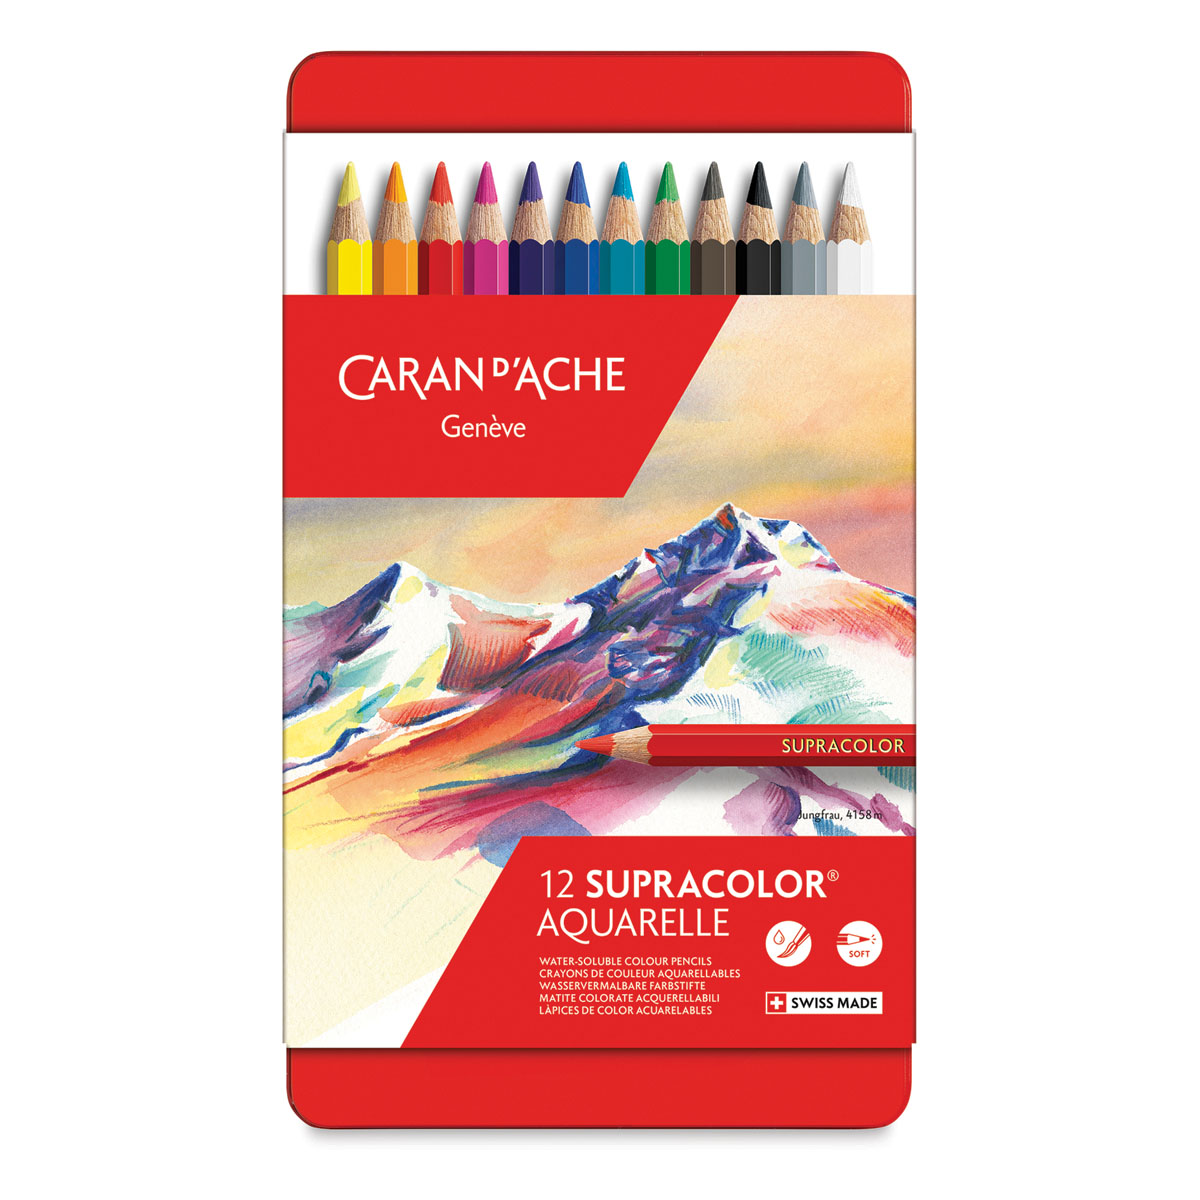 Caran d'Ache Supracolor Soft Aquarelle Pencils and Sets